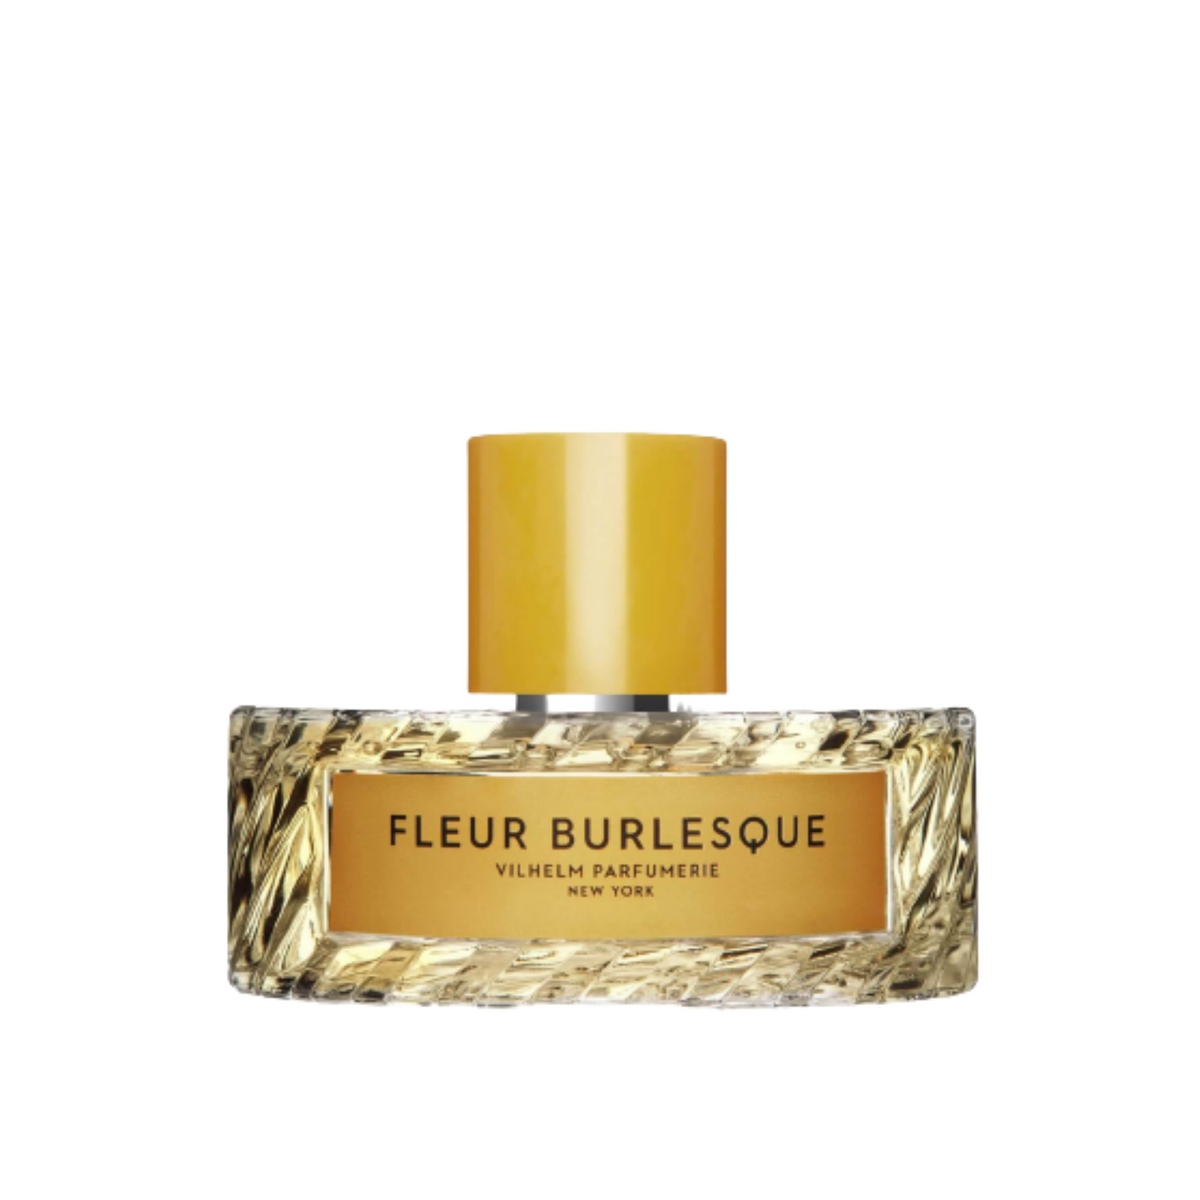 Primary Image of Parfumerie Fleur Burlesque EDP